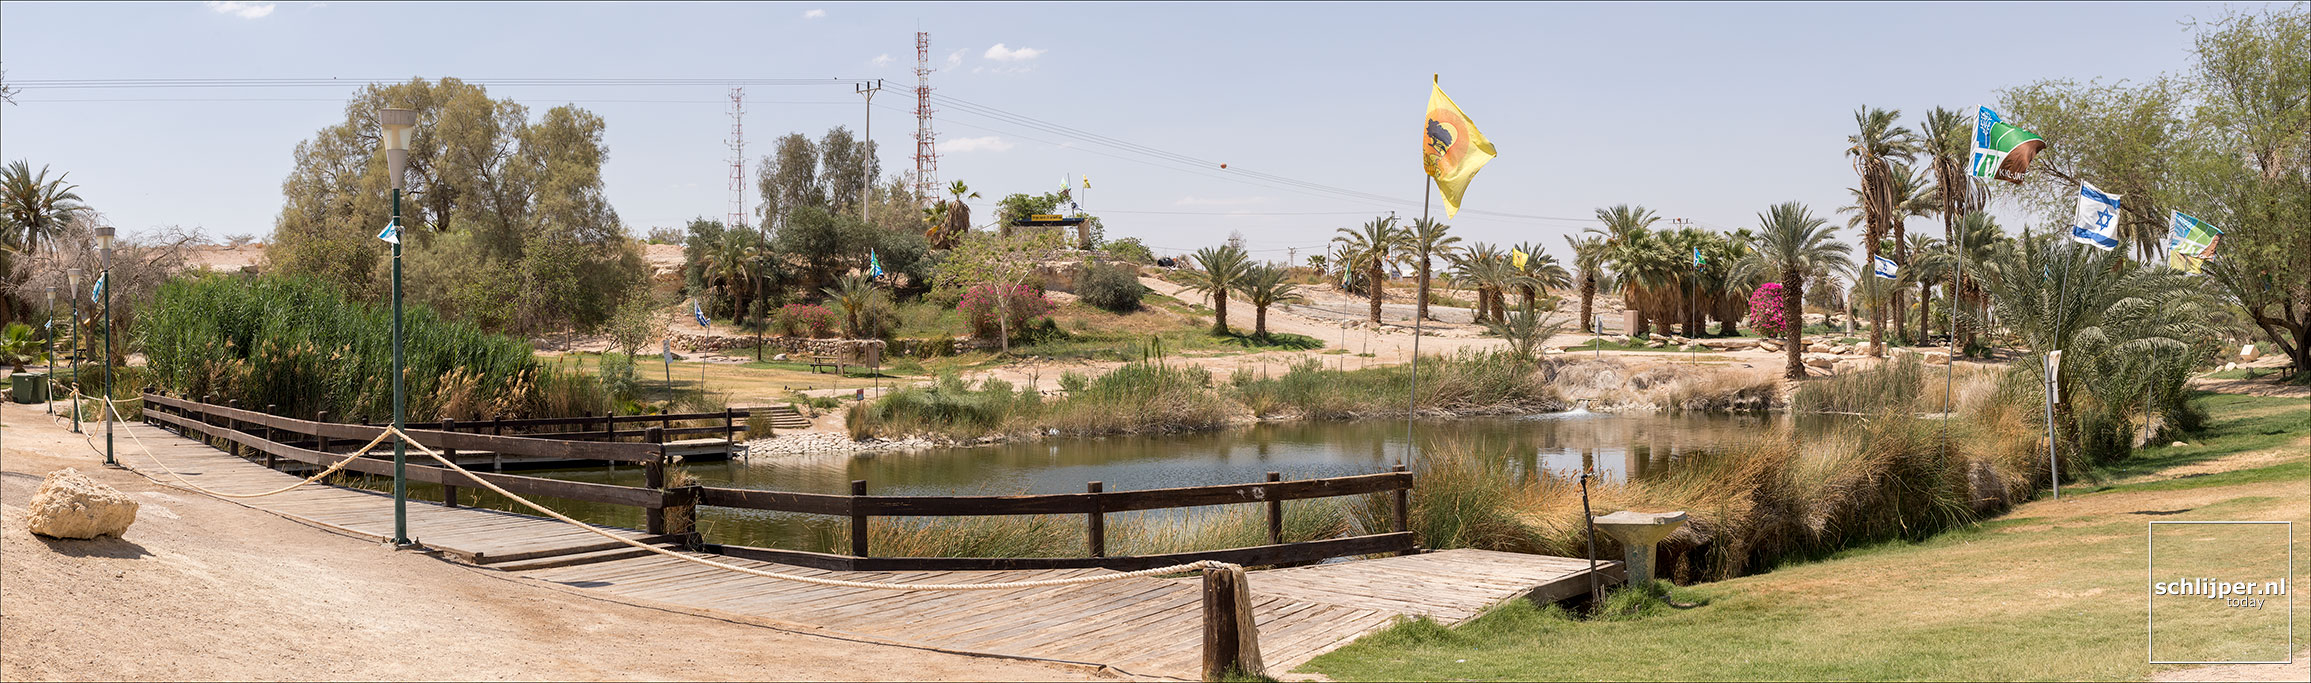 Israel, Sapir Park, 11 juni 2019